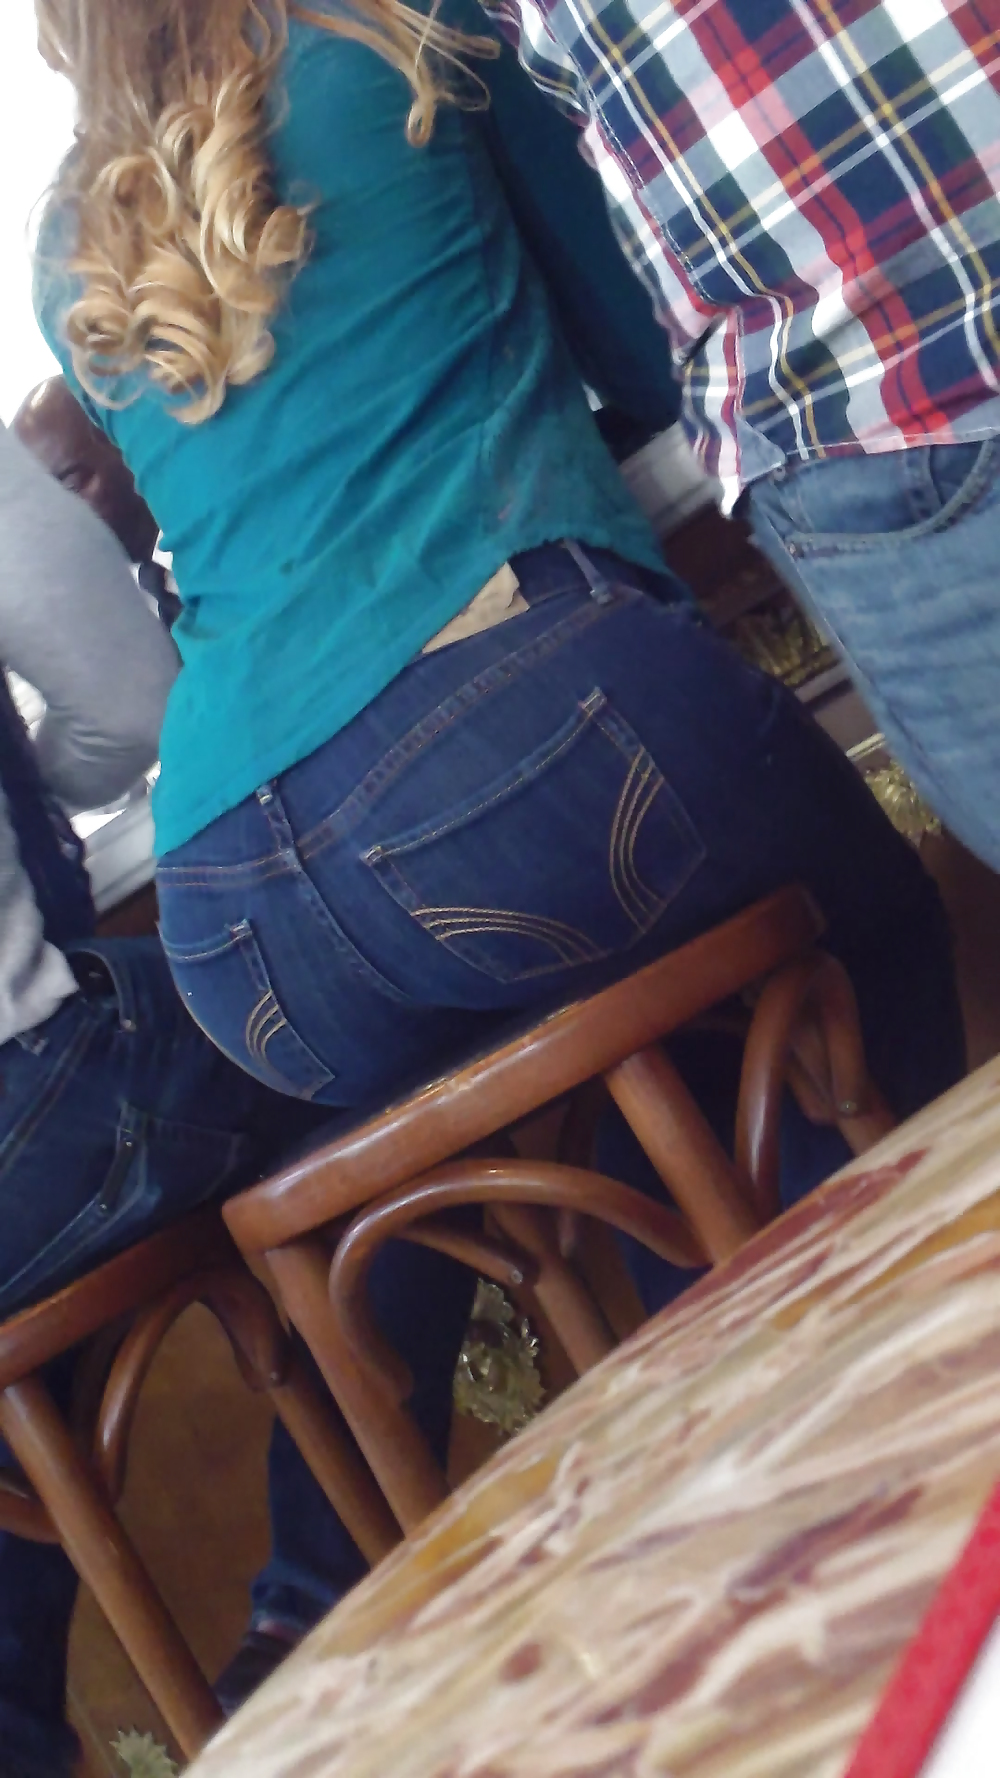 Popular teen girls butt & ass in jeans part 2 #24181151